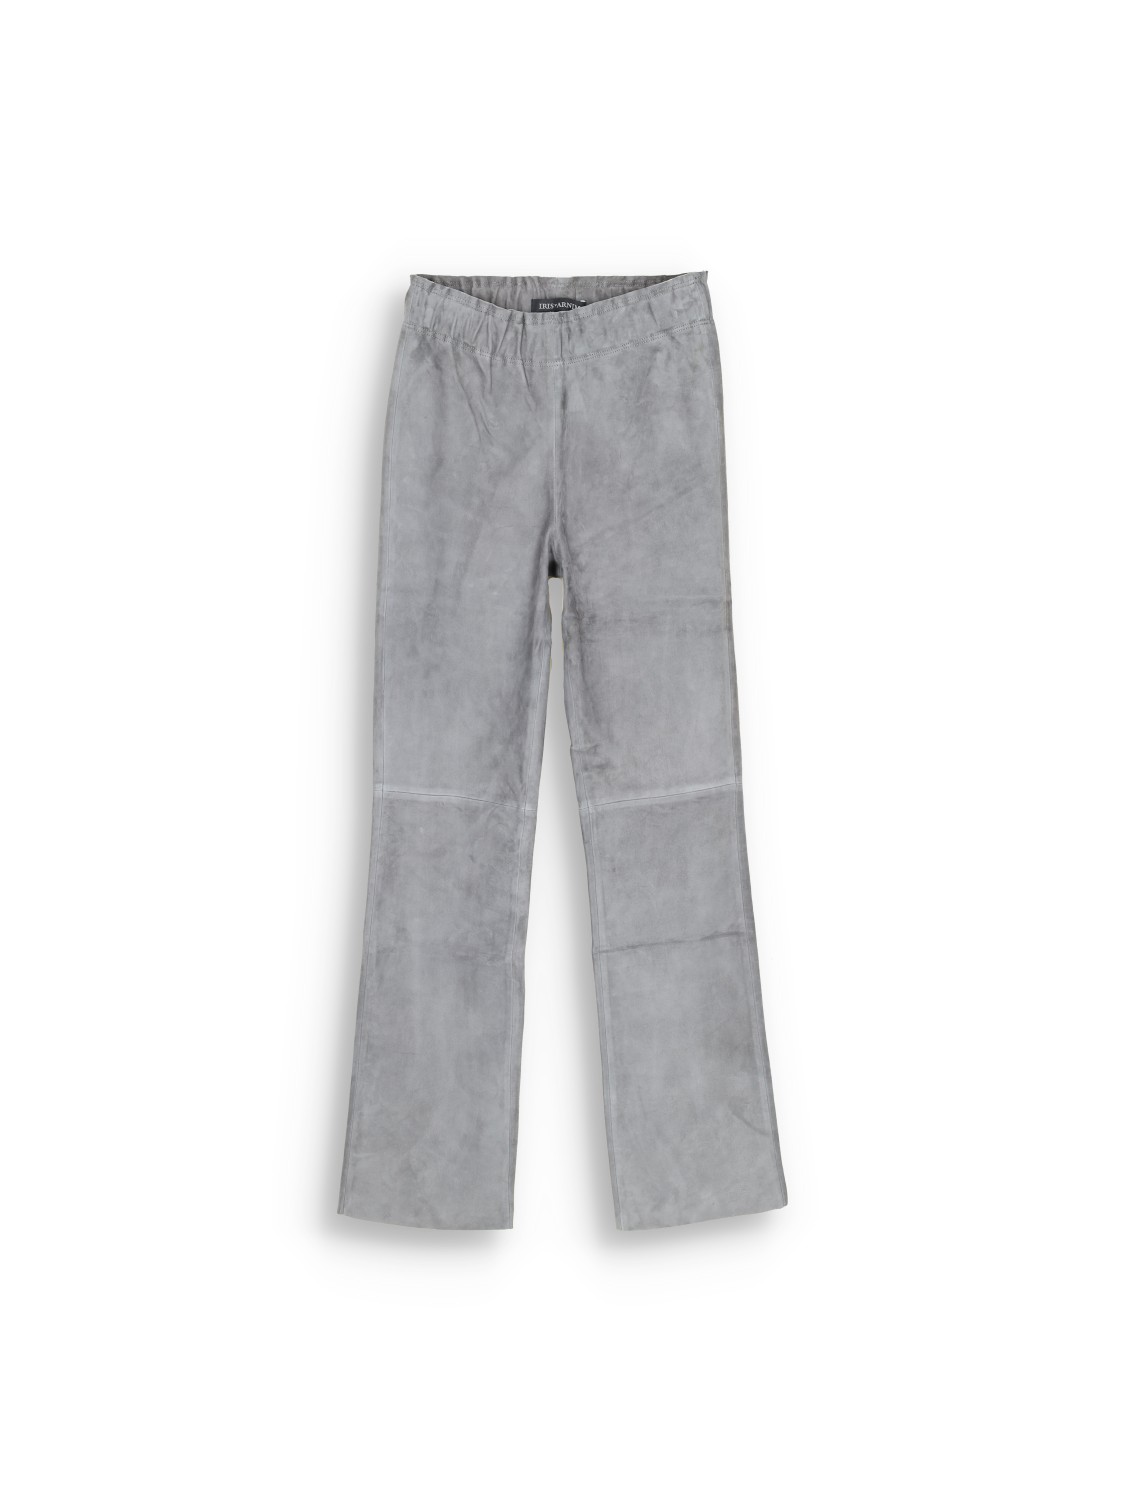 Goatskin trousers - Goatskin trousers with elastic waistband 